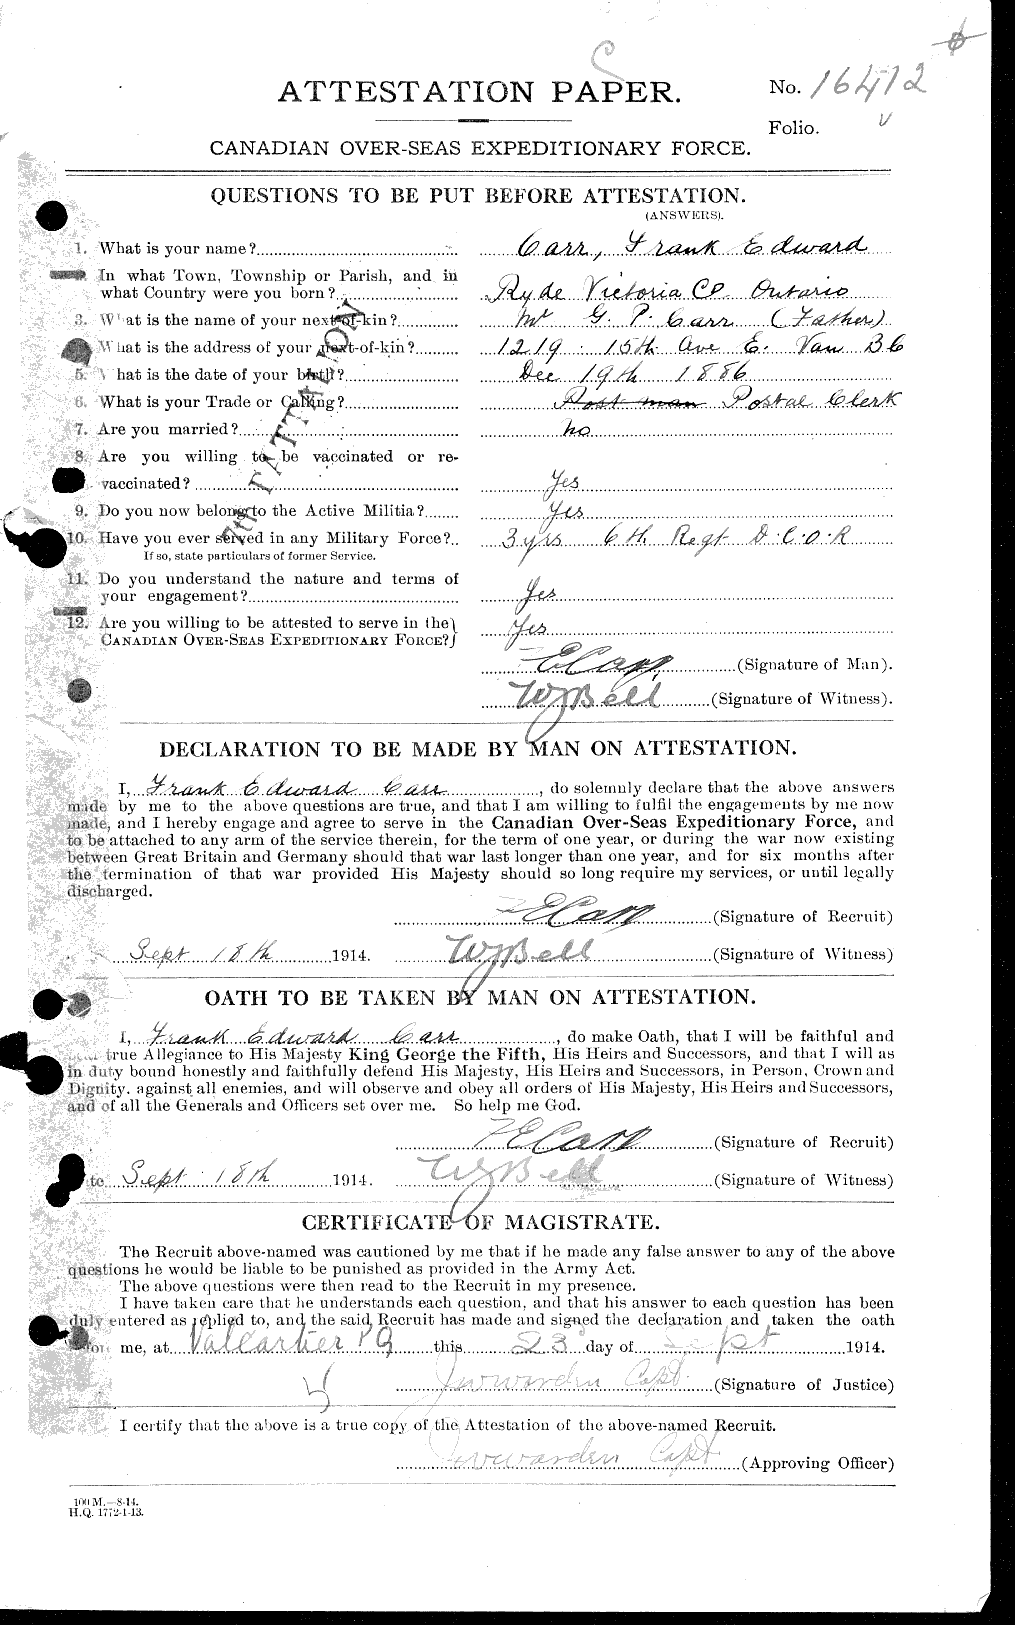 Dossiers du Personnel de la Première Guerre mondiale - CEC 010256a